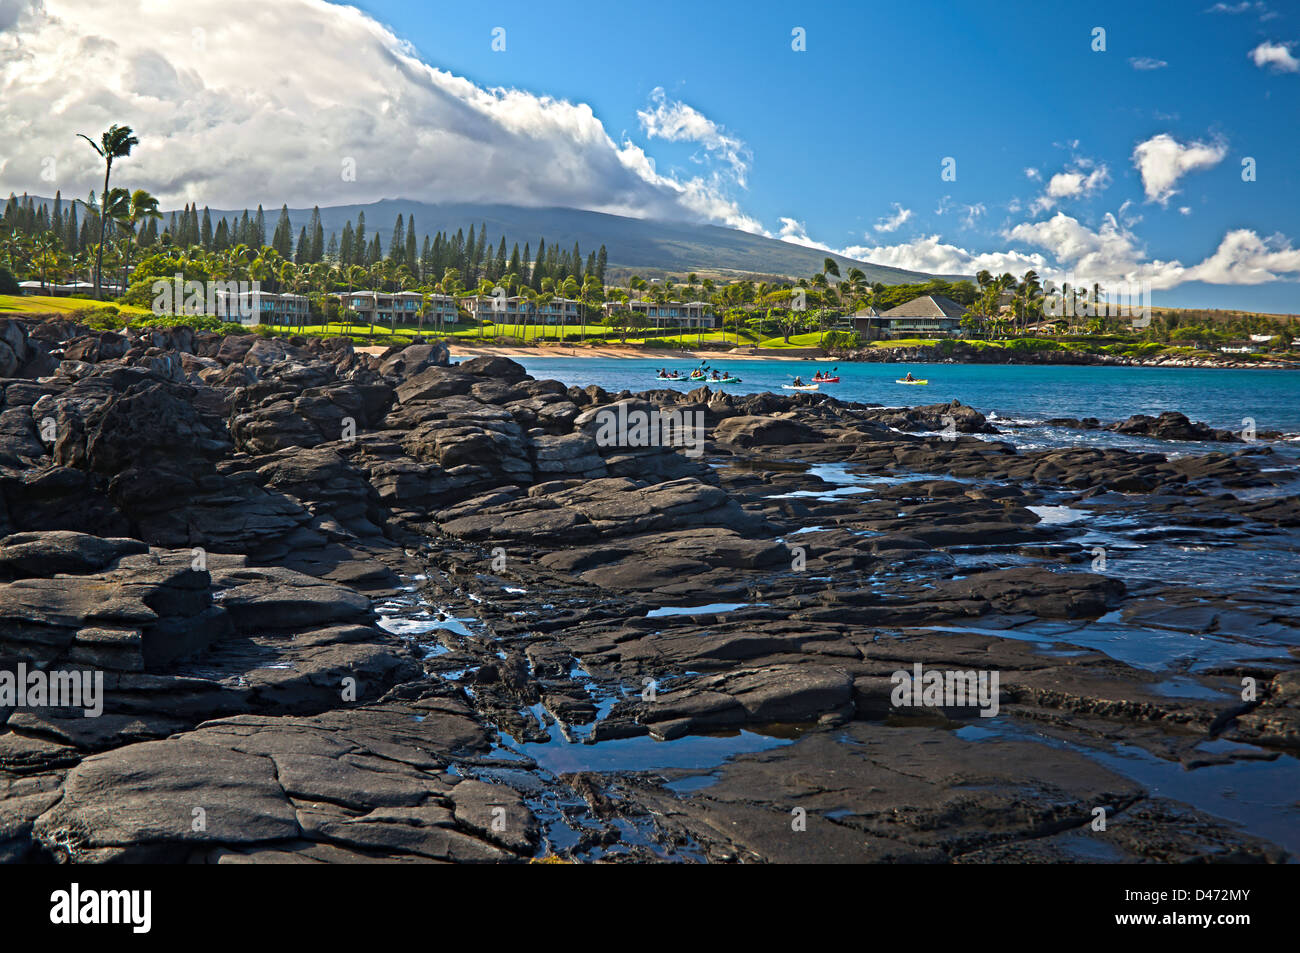 Groupe Kayak dans la Baie de Kapalua, Hawaii. Trois images ont été combinées numériquement pour créer cette image HDR. Banque D'Images